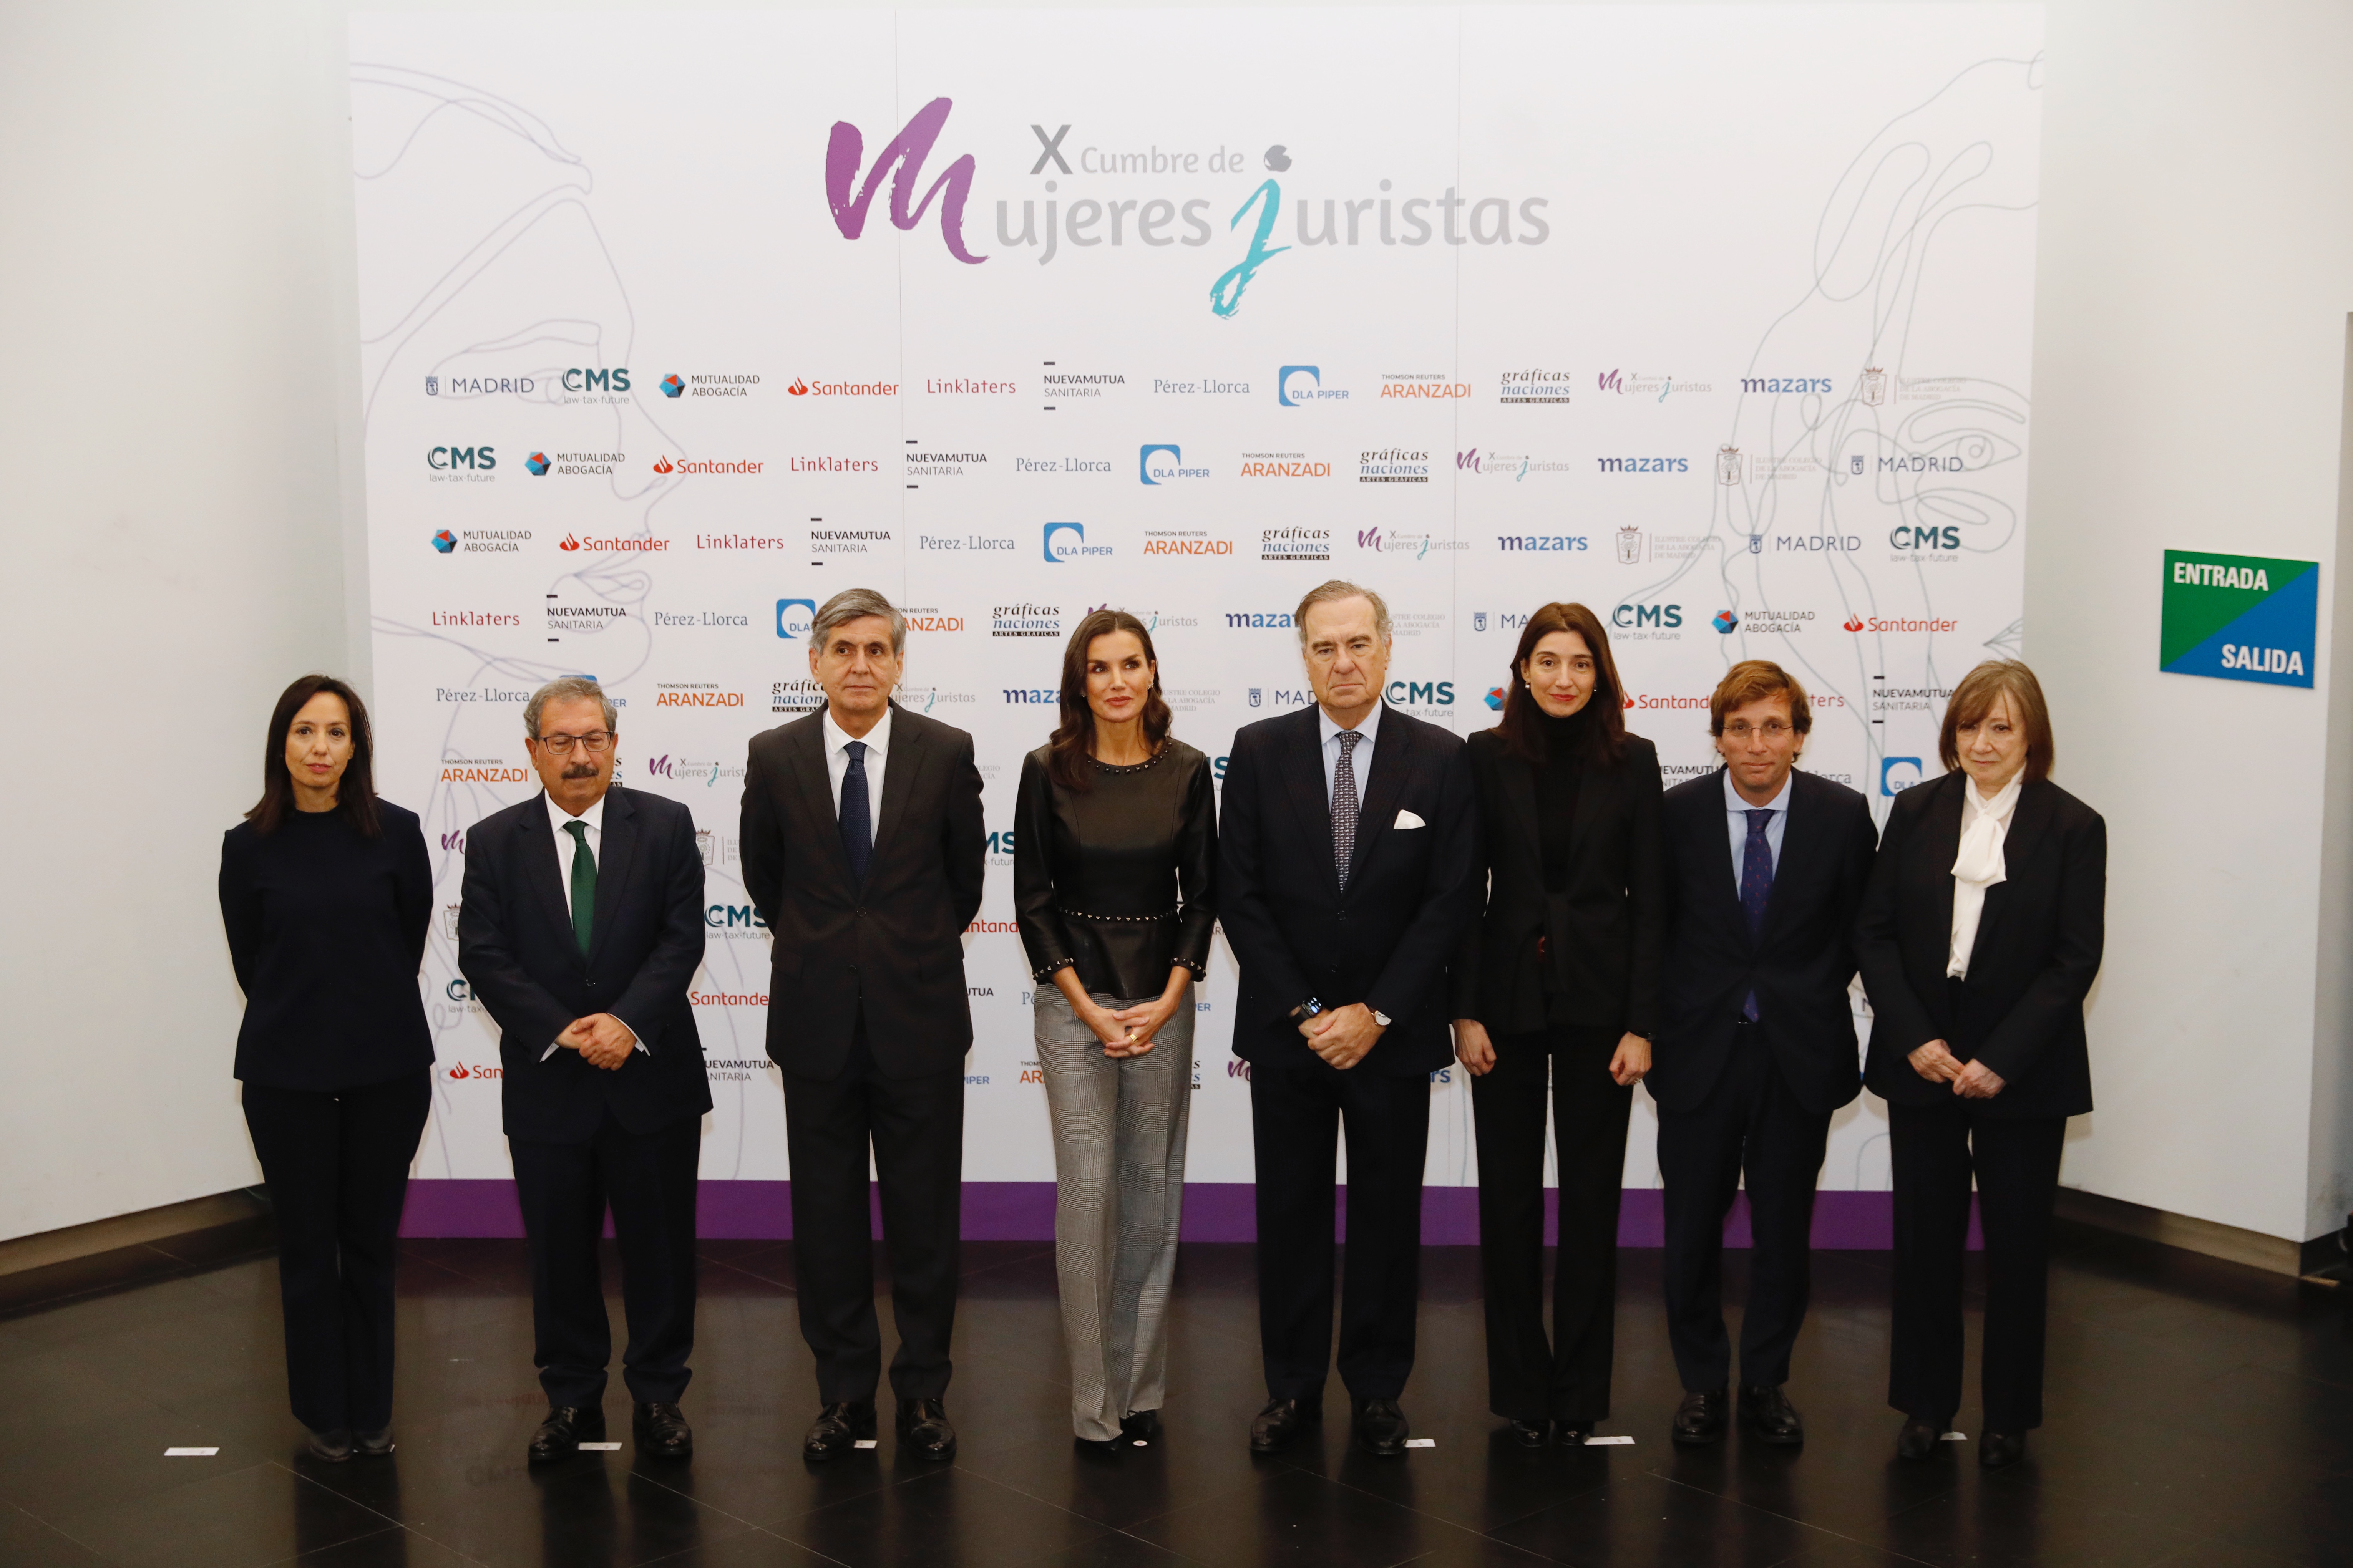 La reina Letizia y el alcalde de Madrid, junto al resto de personalidades que han asistido a la X Cumbre de Mujeres Juristas